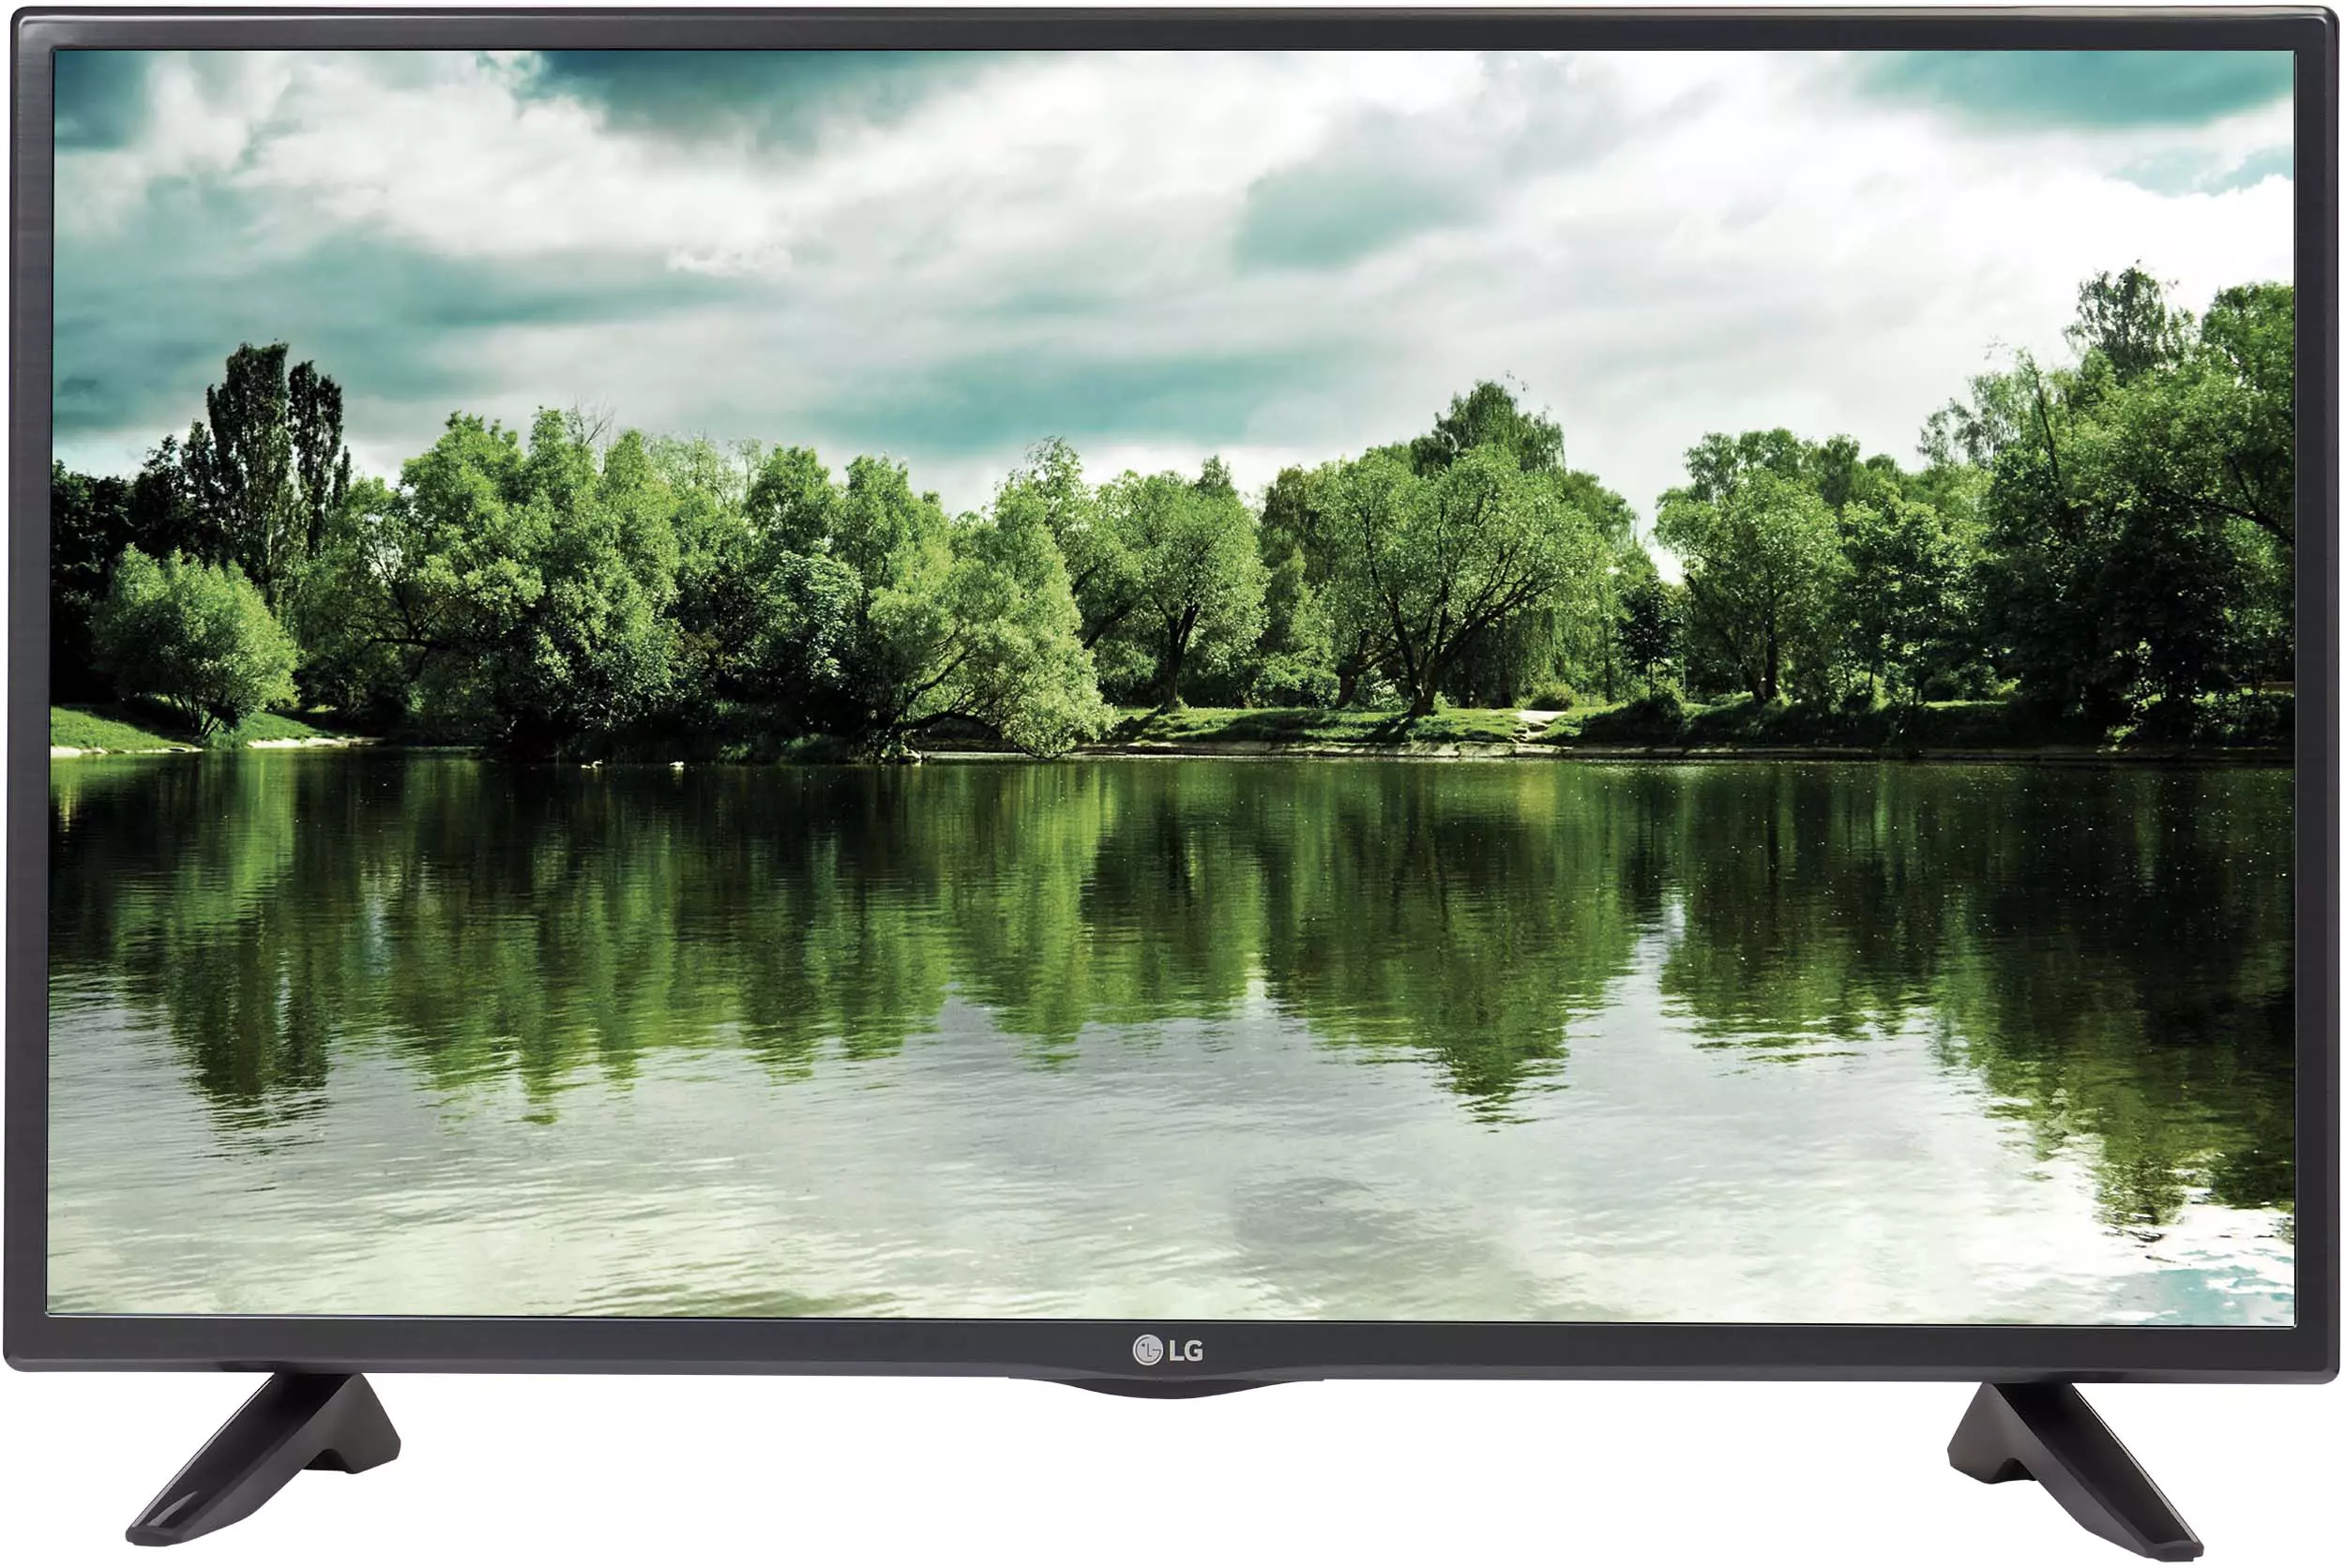 Led телевизор LG 42lf551c. Телевизор LG 28lf551c 28" (2015).